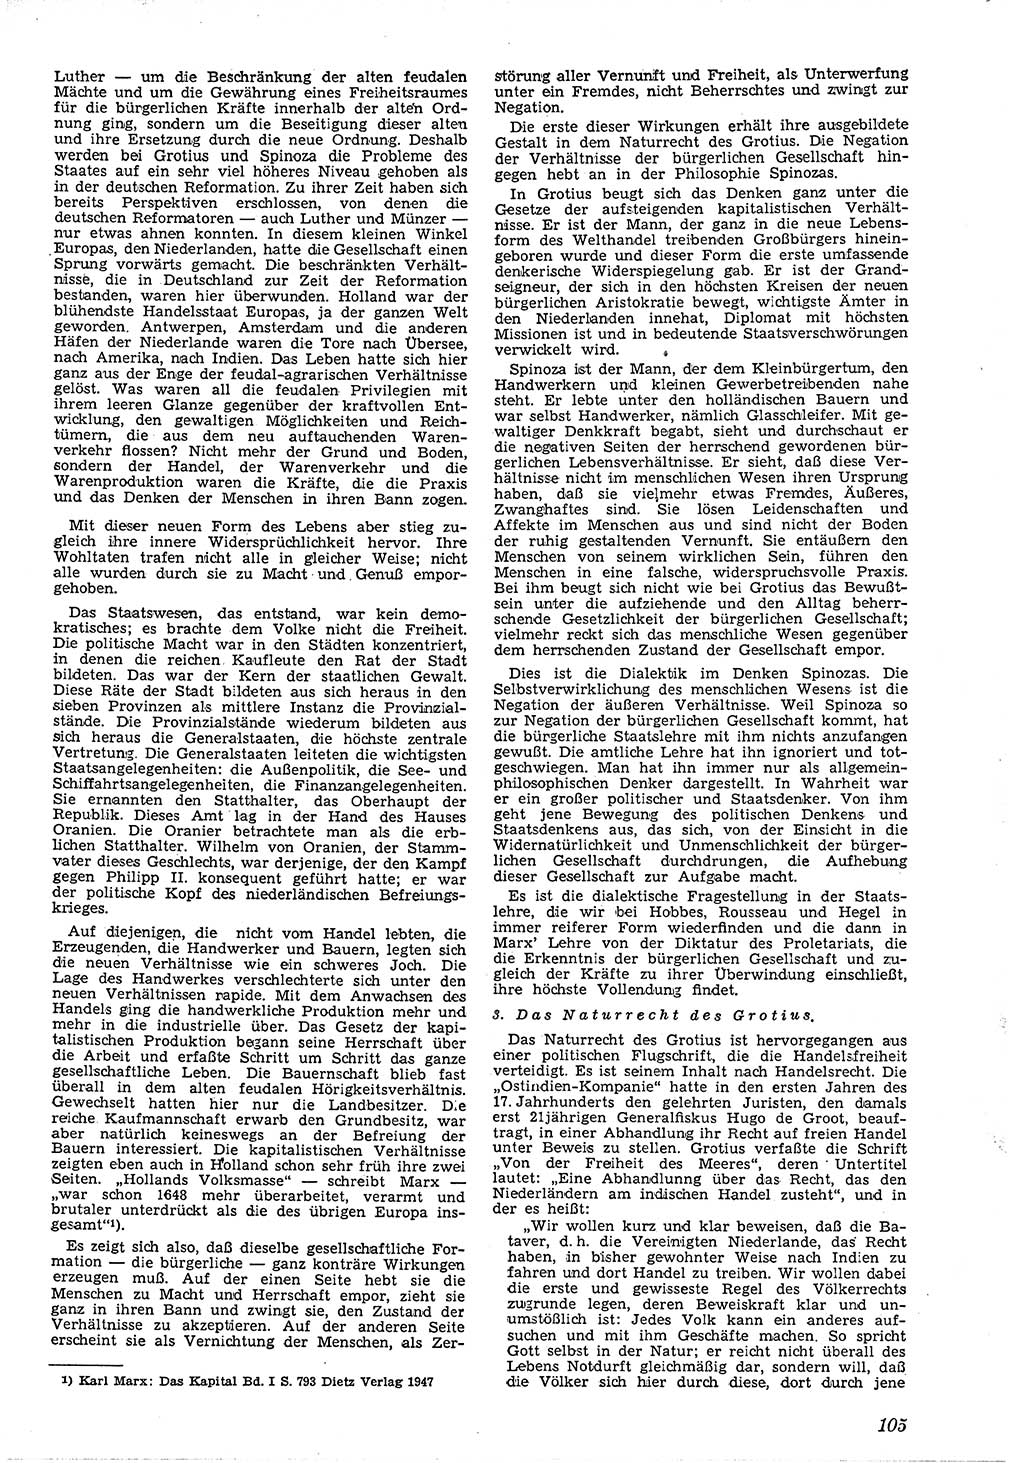 Neue Justiz (NJ), Zeitschrift für Recht und Rechtswissenschaft [Deutsche Demokratische Republik (DDR)], 4. Jahrgang 1950, Seite 105 (NJ DDR 1950, S. 105)